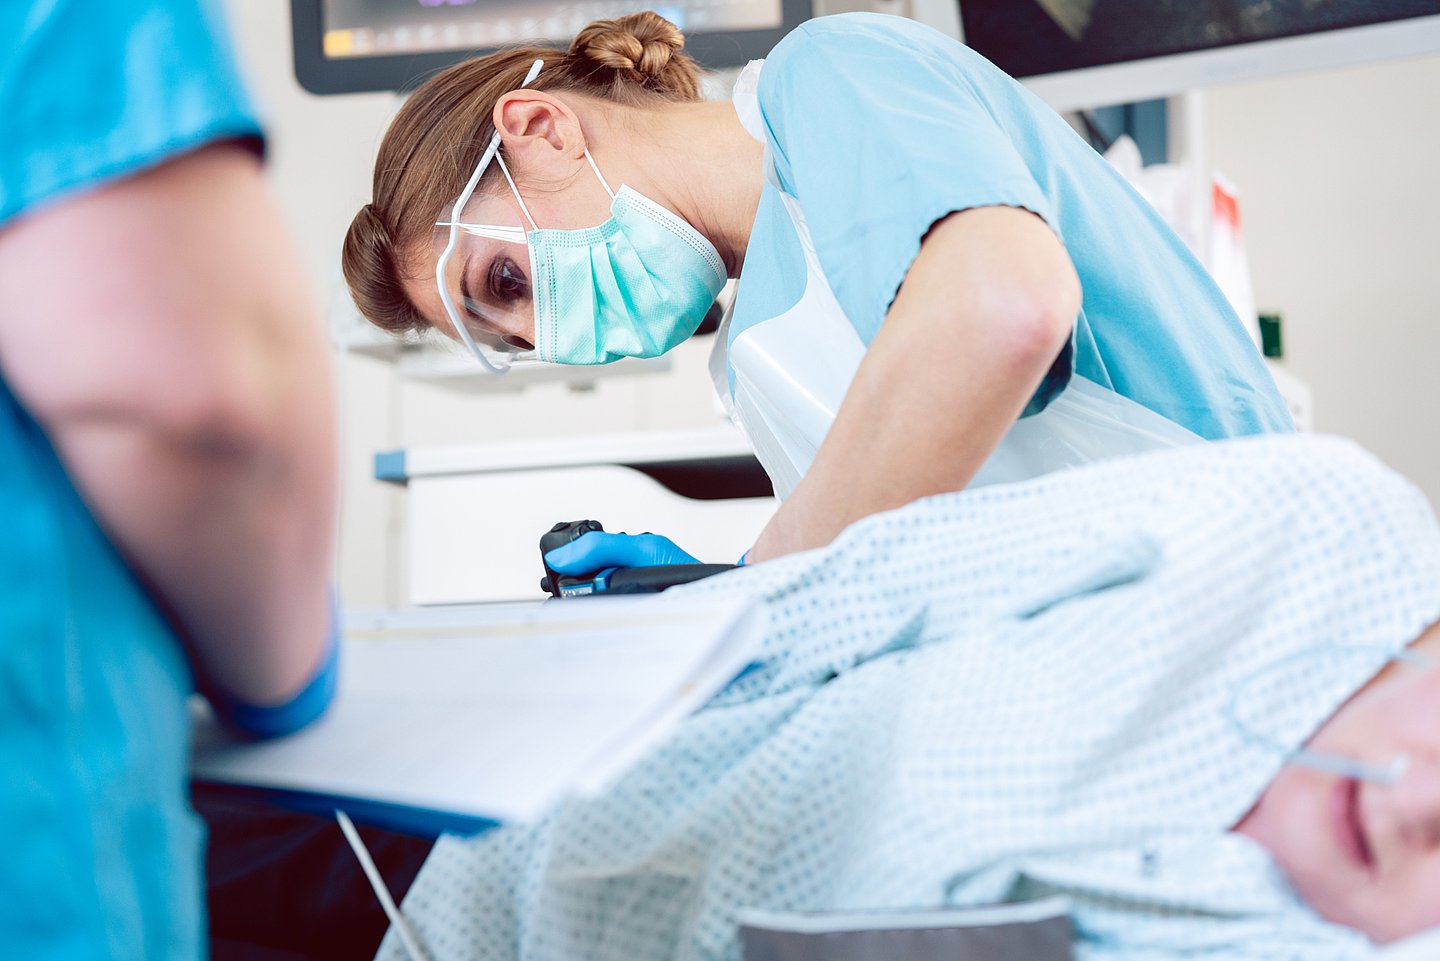 Foto zeigt eine narkotisierte Patientin bei der gerade eine Ärztin mit Mundschutz eine Koloskopie durchführt.